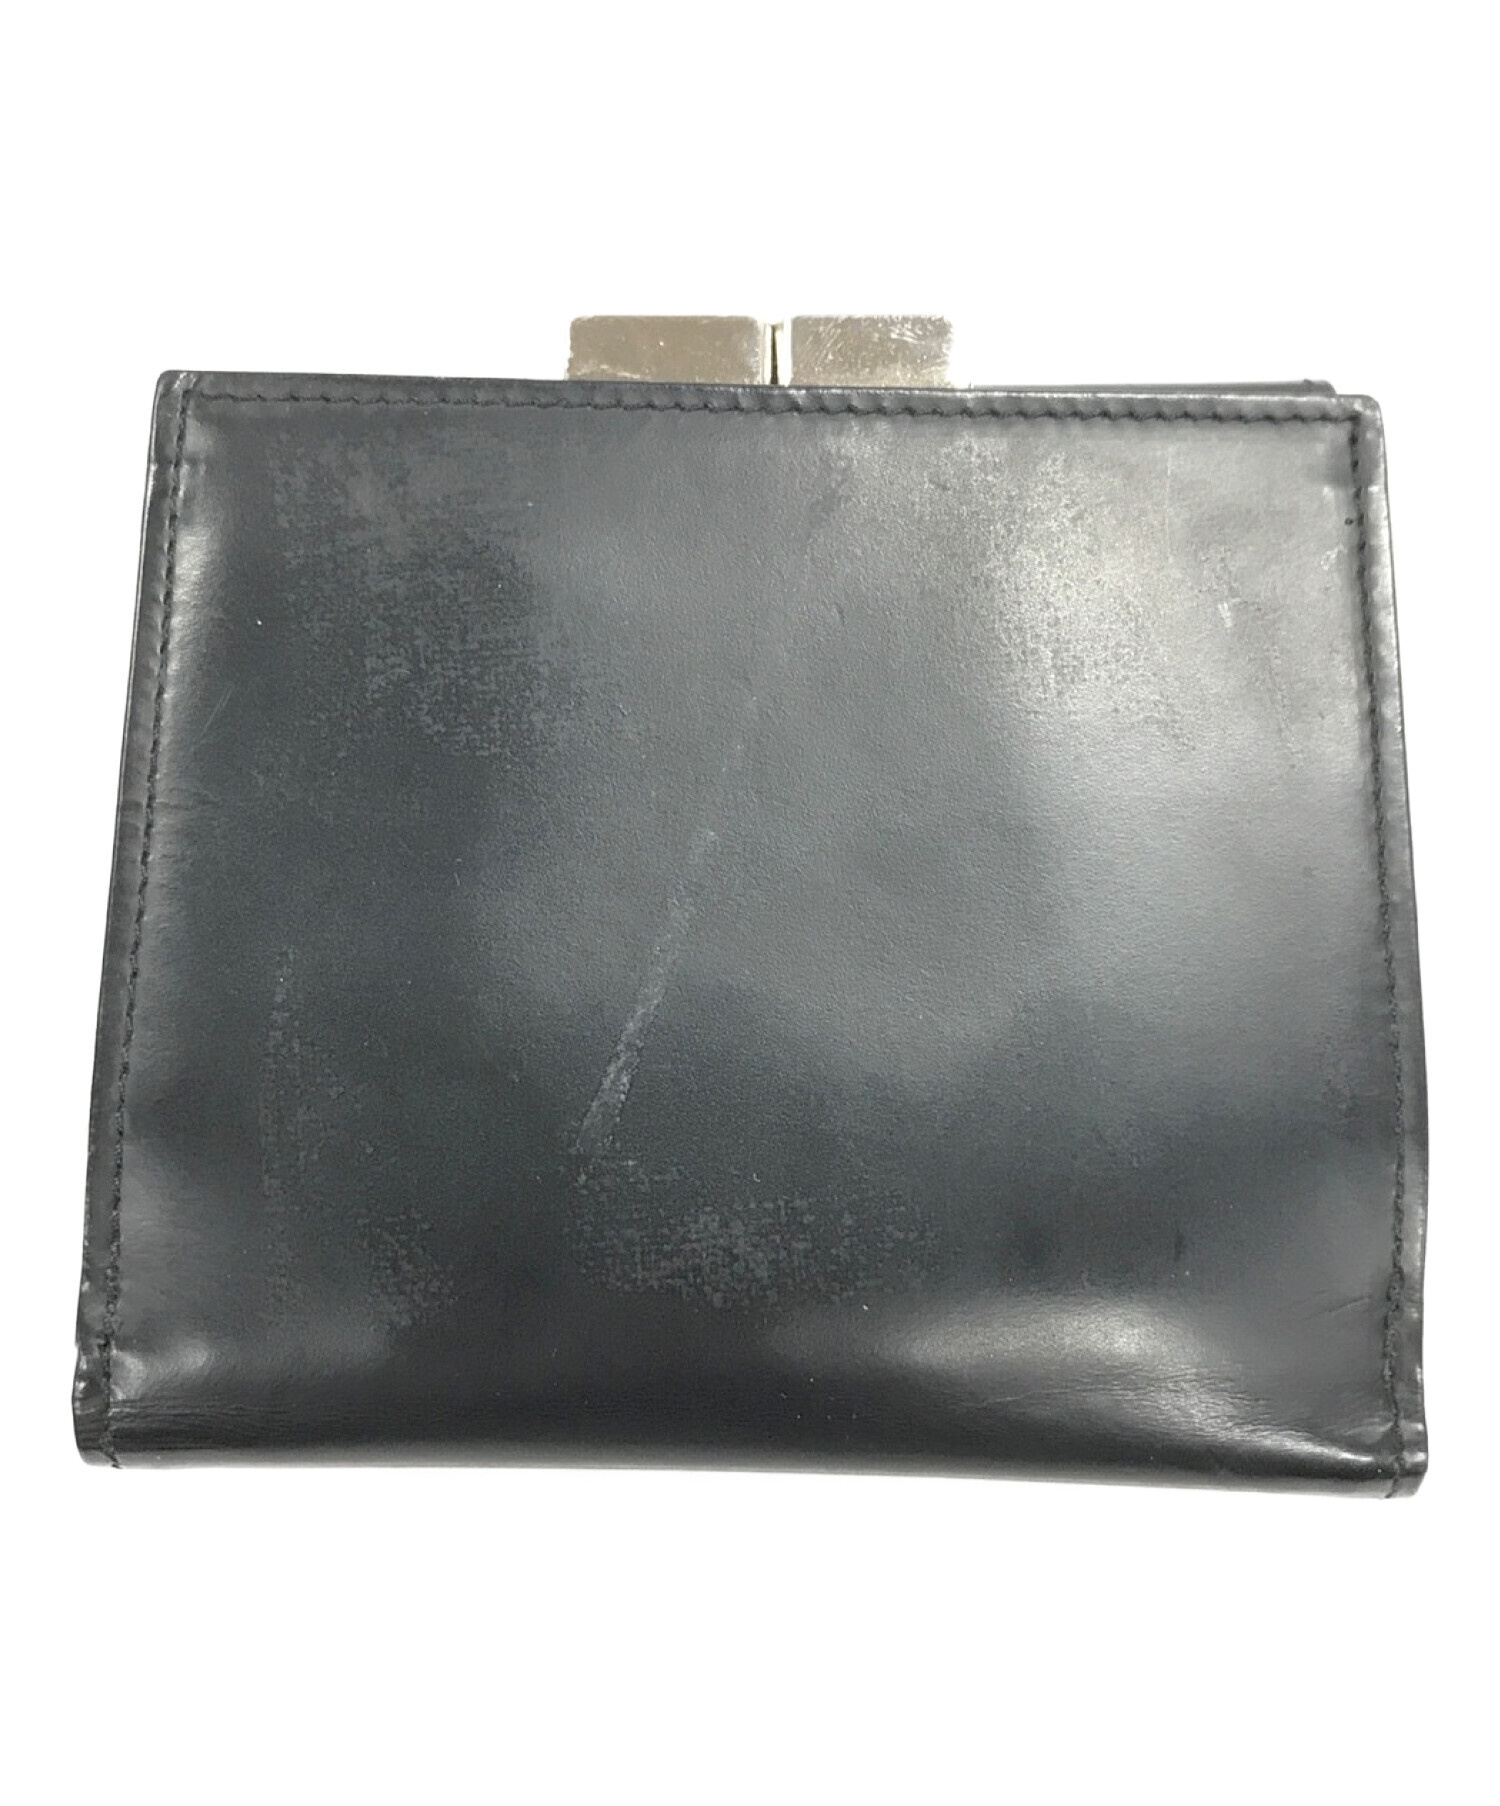 Jean Paul GAULTIER (ジャンポールゴルチエ) 3つ折り財布 ブラック サイズ:実寸サイズにてご確認ください。